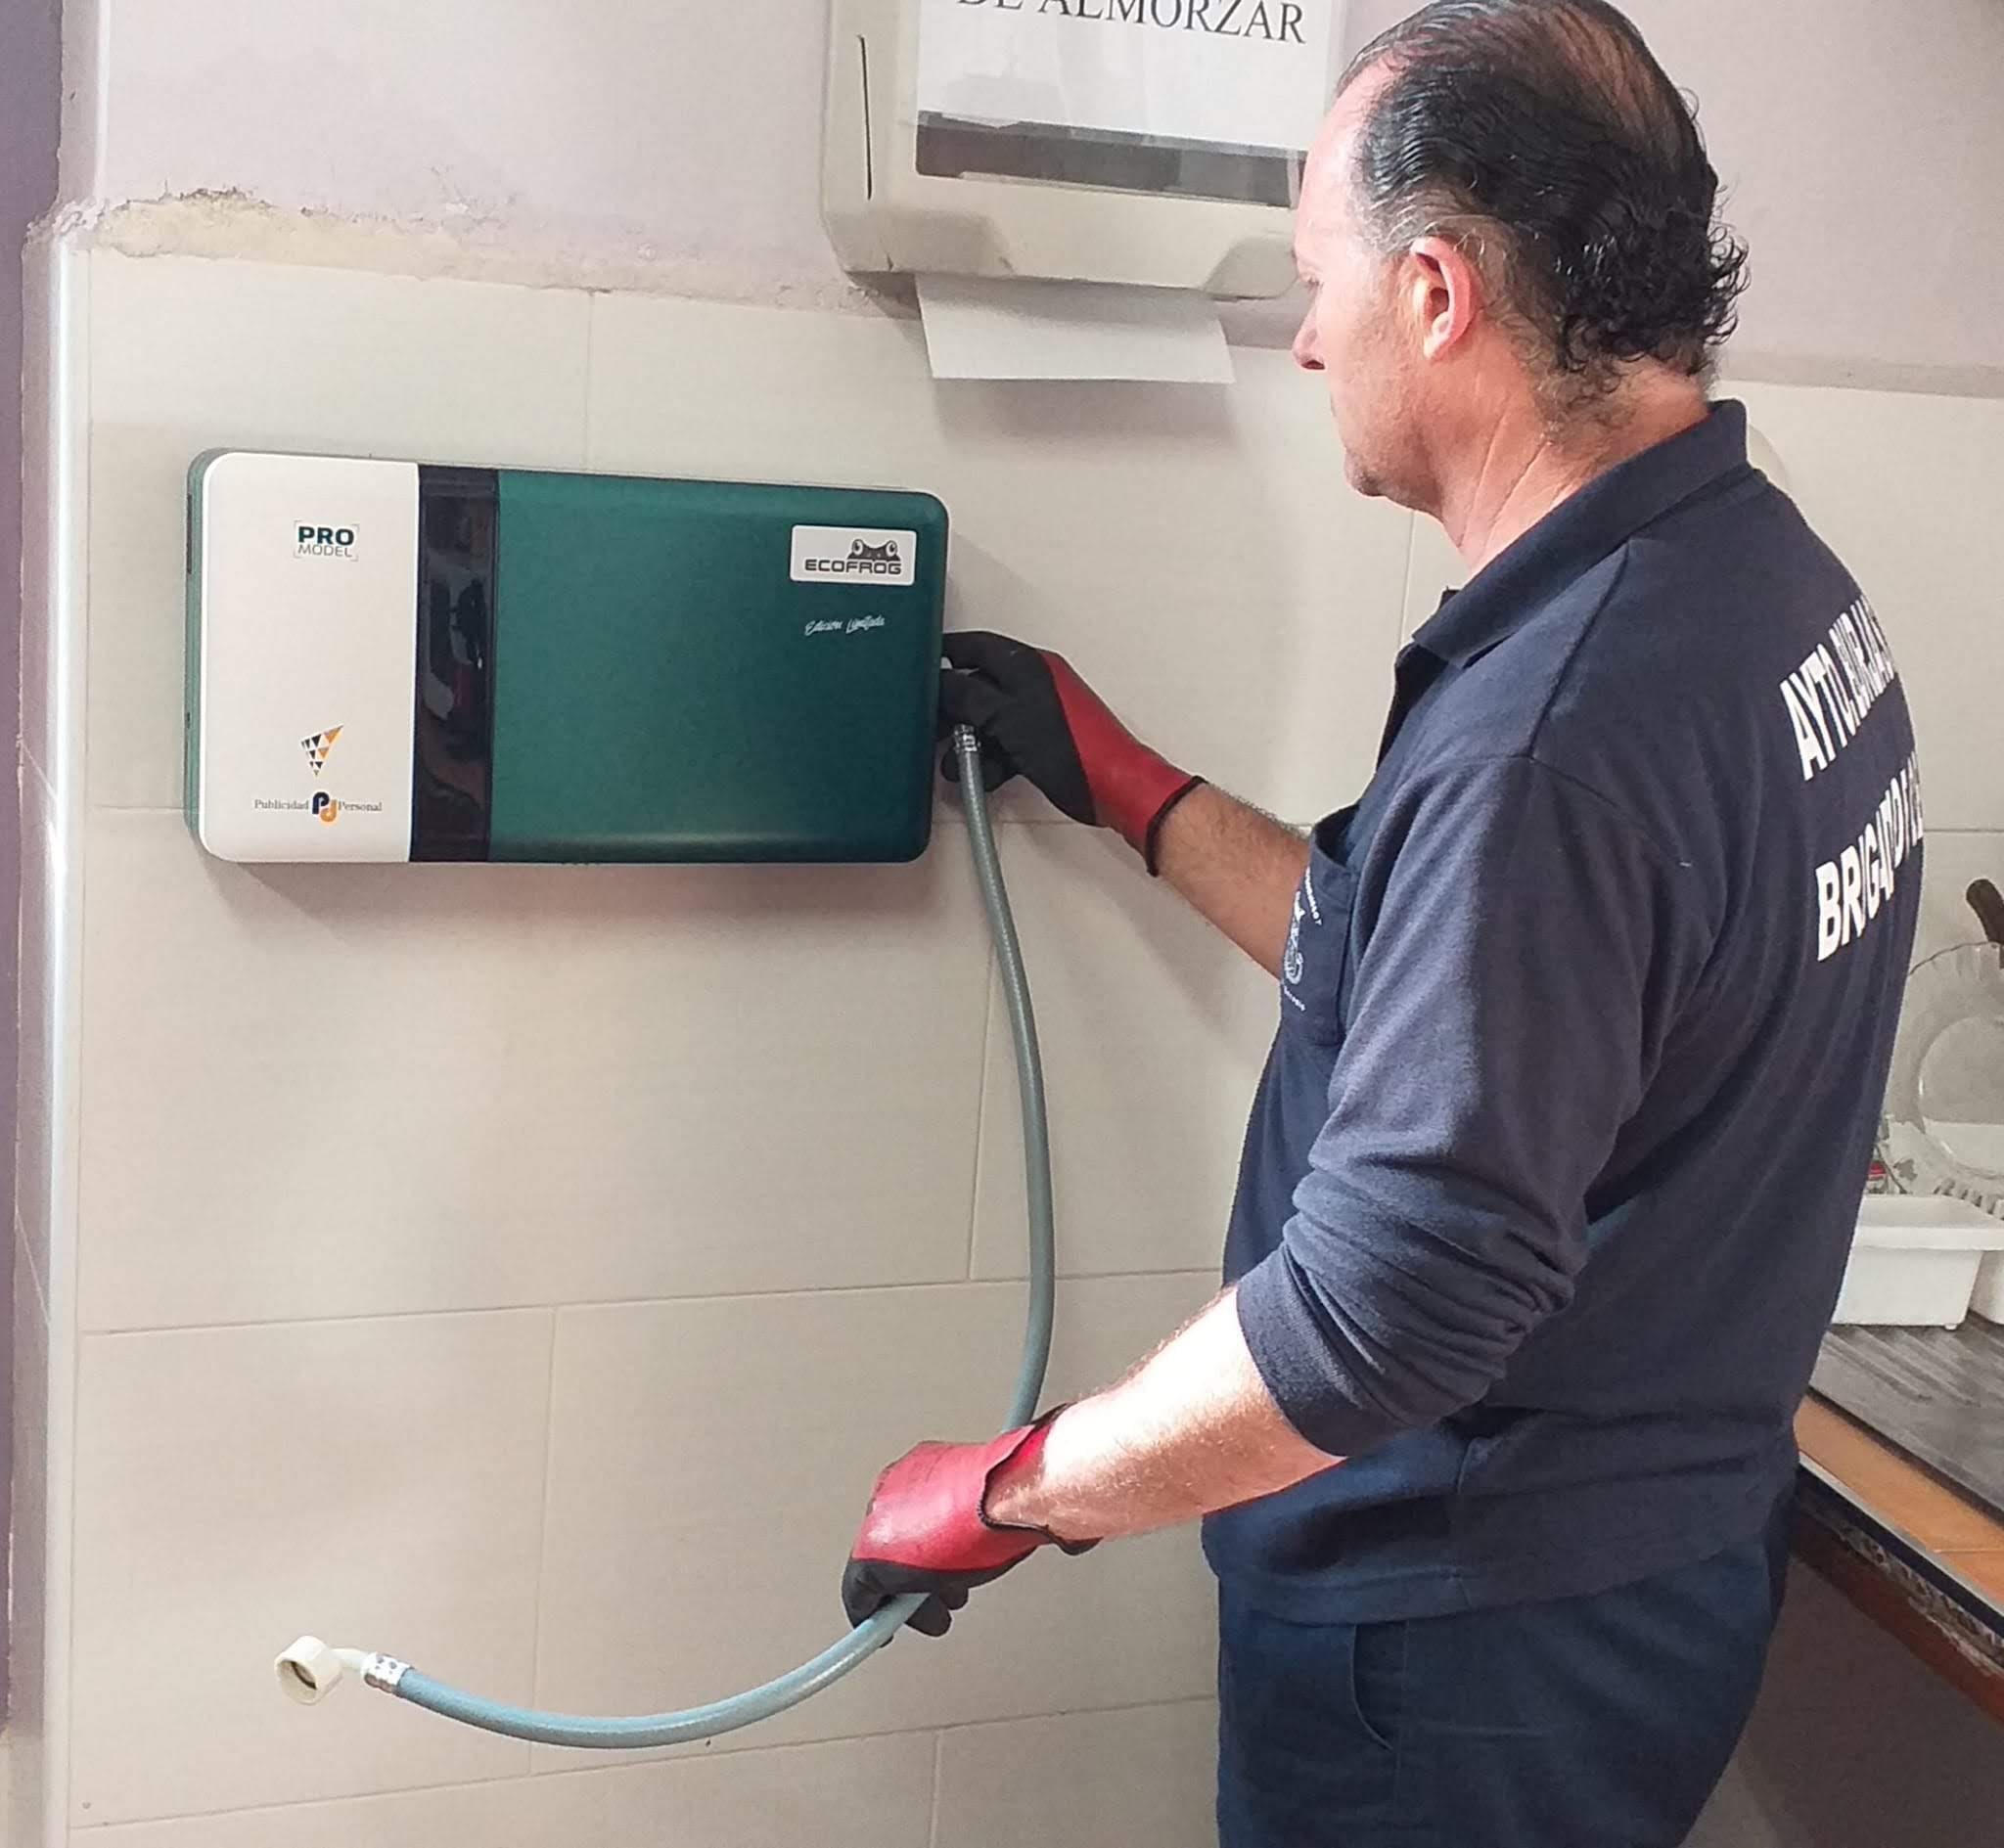 Comienzan los trabajos de limpieza y desinfección con agua tratada con ozono  – Ajuntament de Burjassot